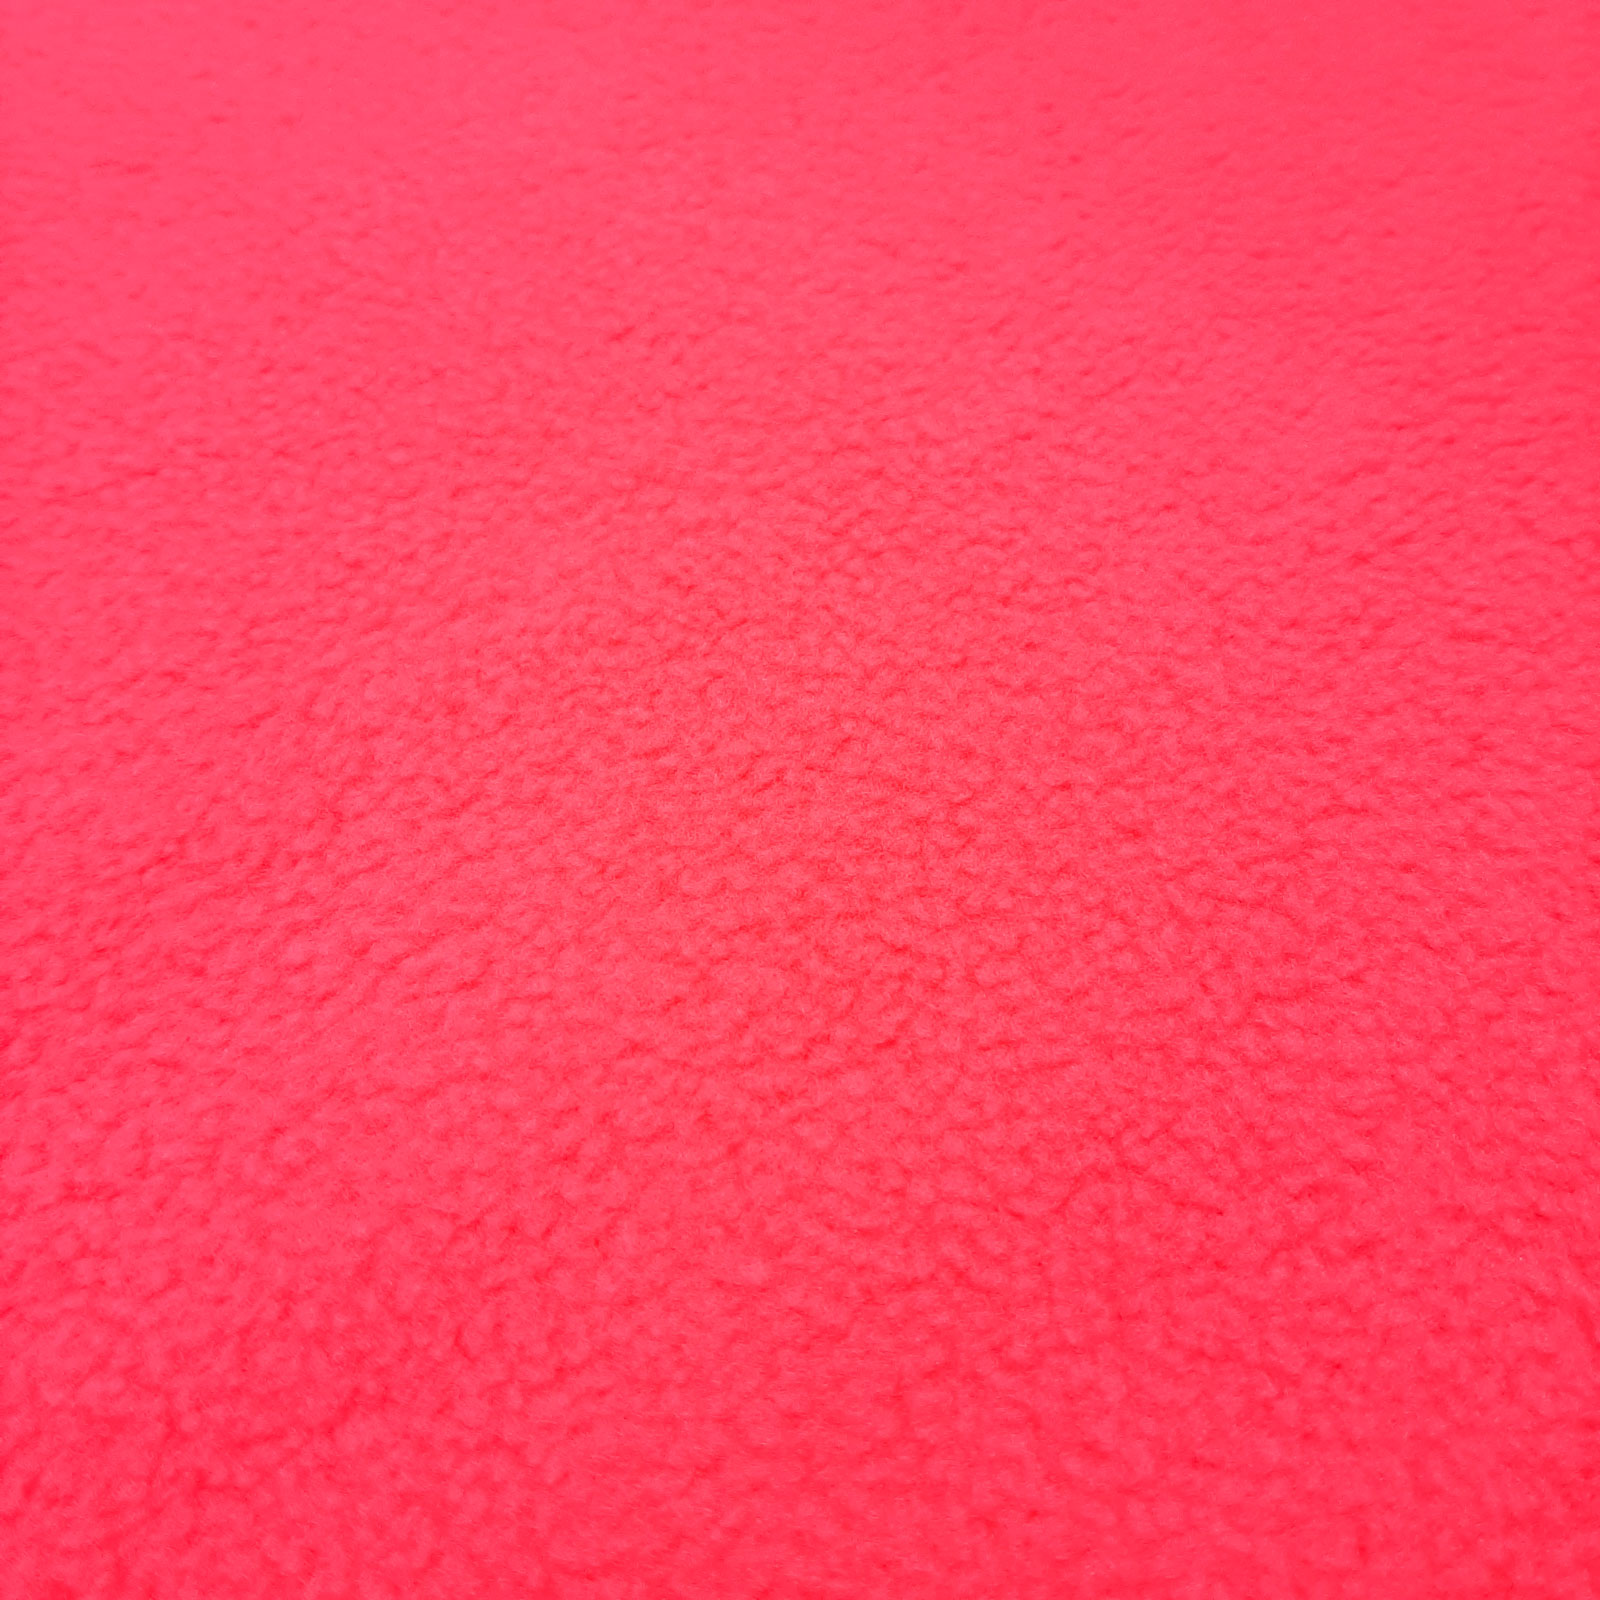 Polarfleece – Forro polar (cores fluorescente) - Rosa néon